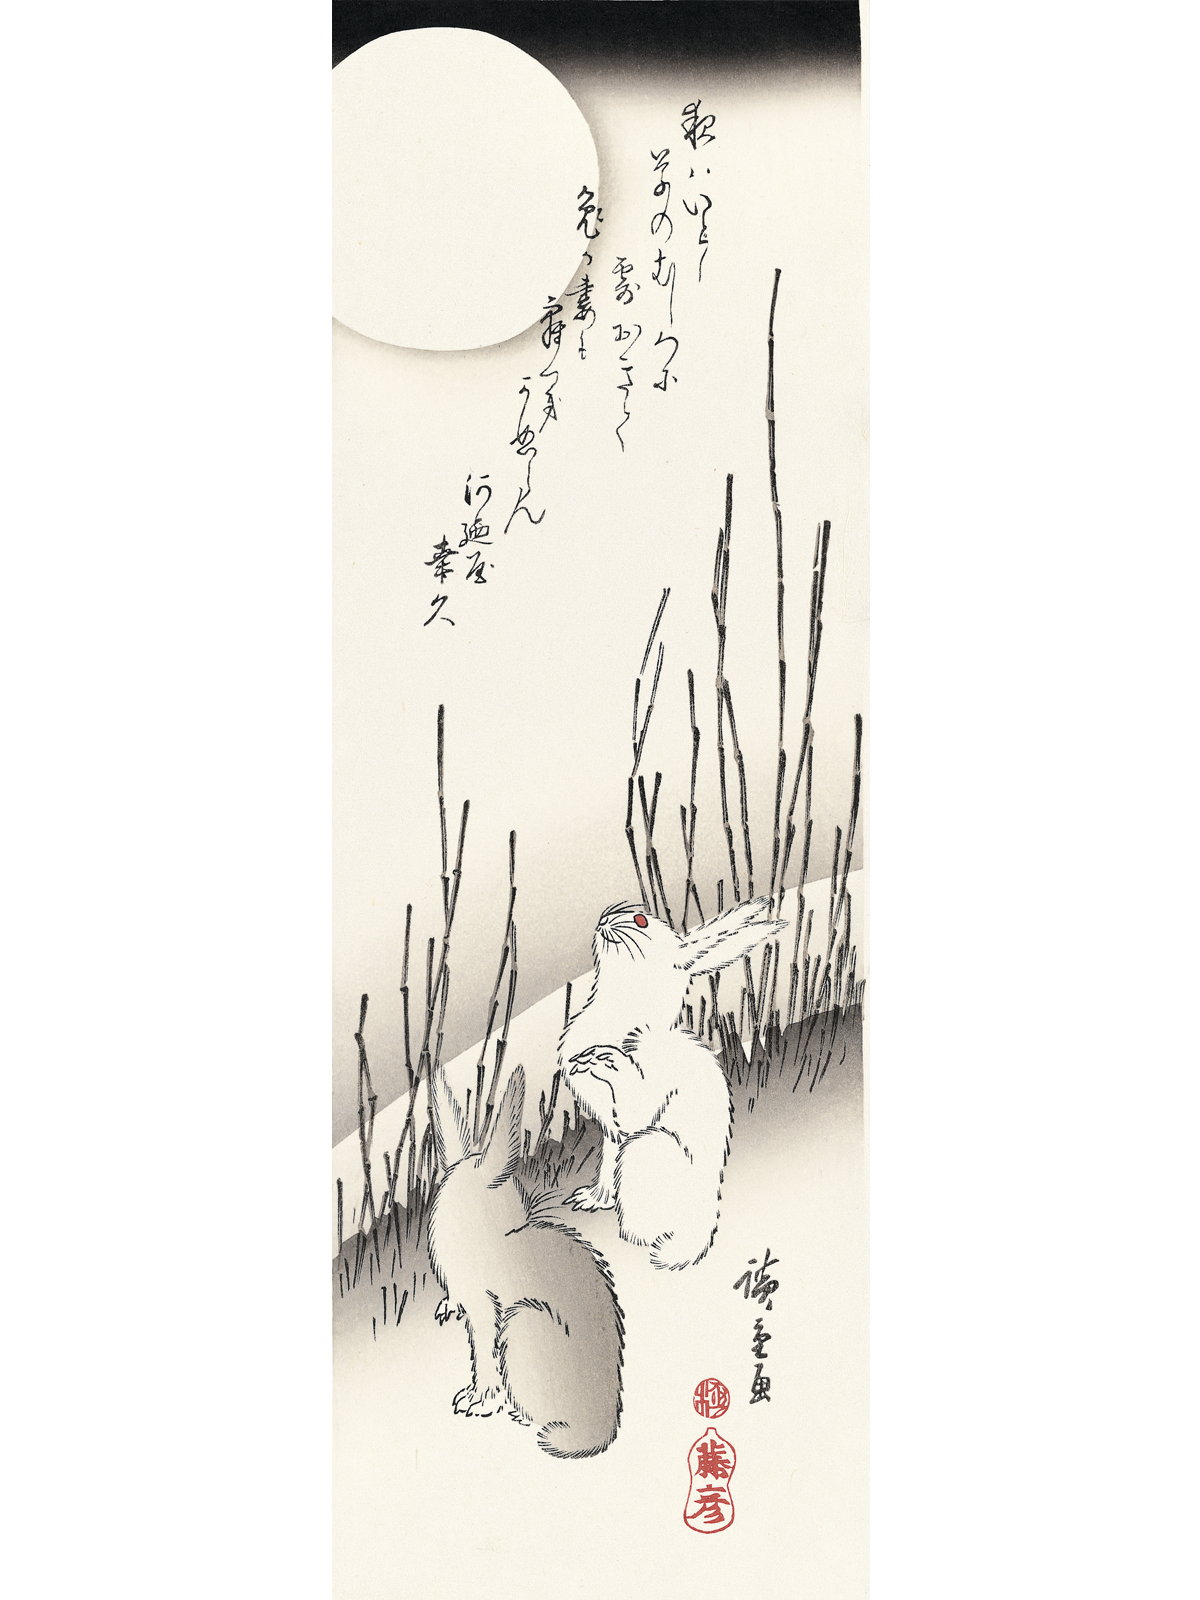 歌川広重「月夜木賊に兎」アダチ版復刻浮世絵